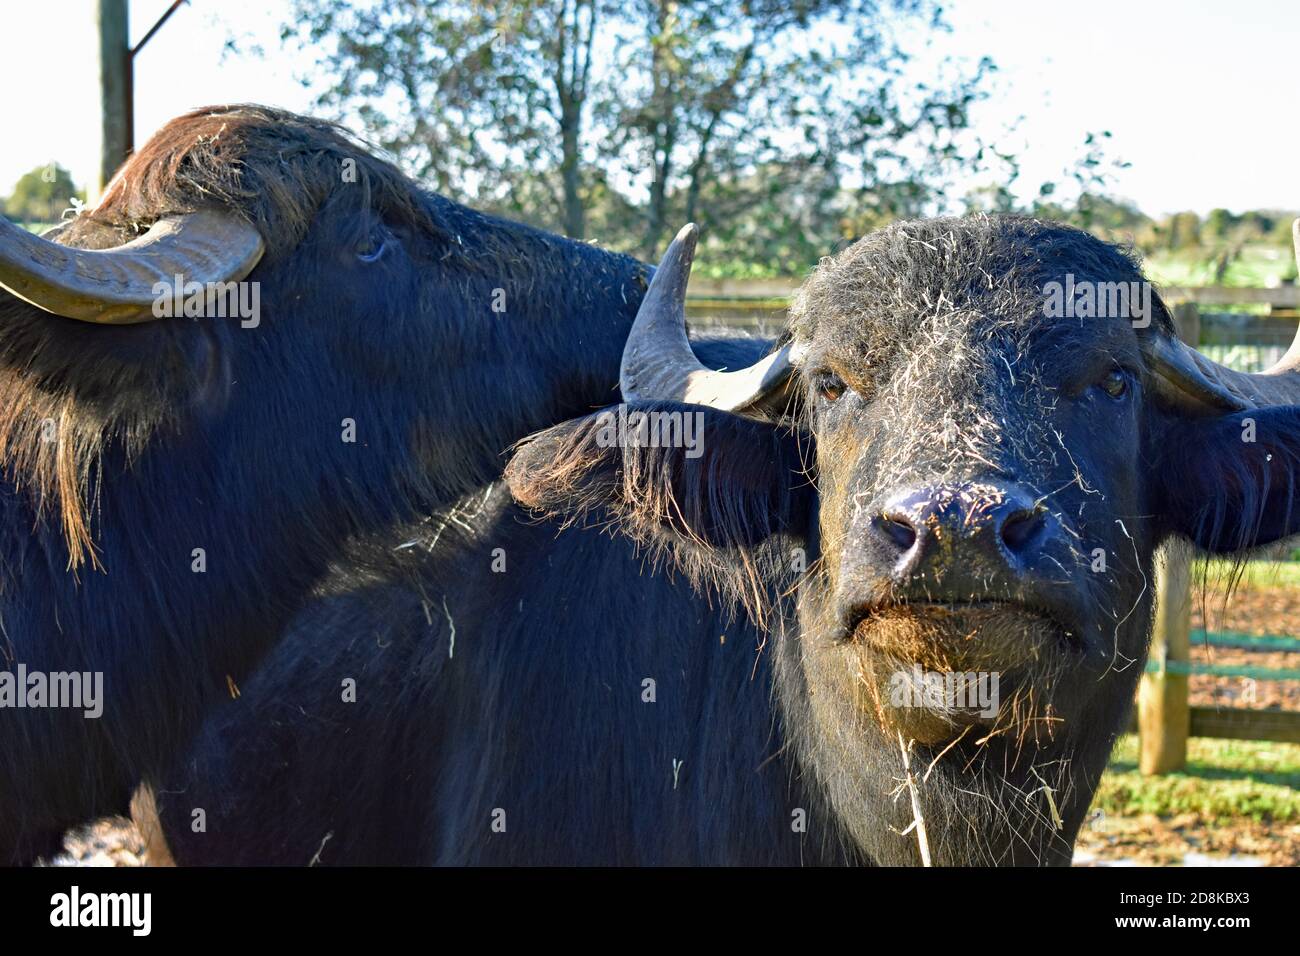 Deux buffles d'eau domestiques (Bubalus bubalis) se trouvent dans leur enceinte à Africa Alive, Suffolk, Royaume-Uni. Un bison a de l'herbe et de la boue couvrant sa tête. Banque D'Images